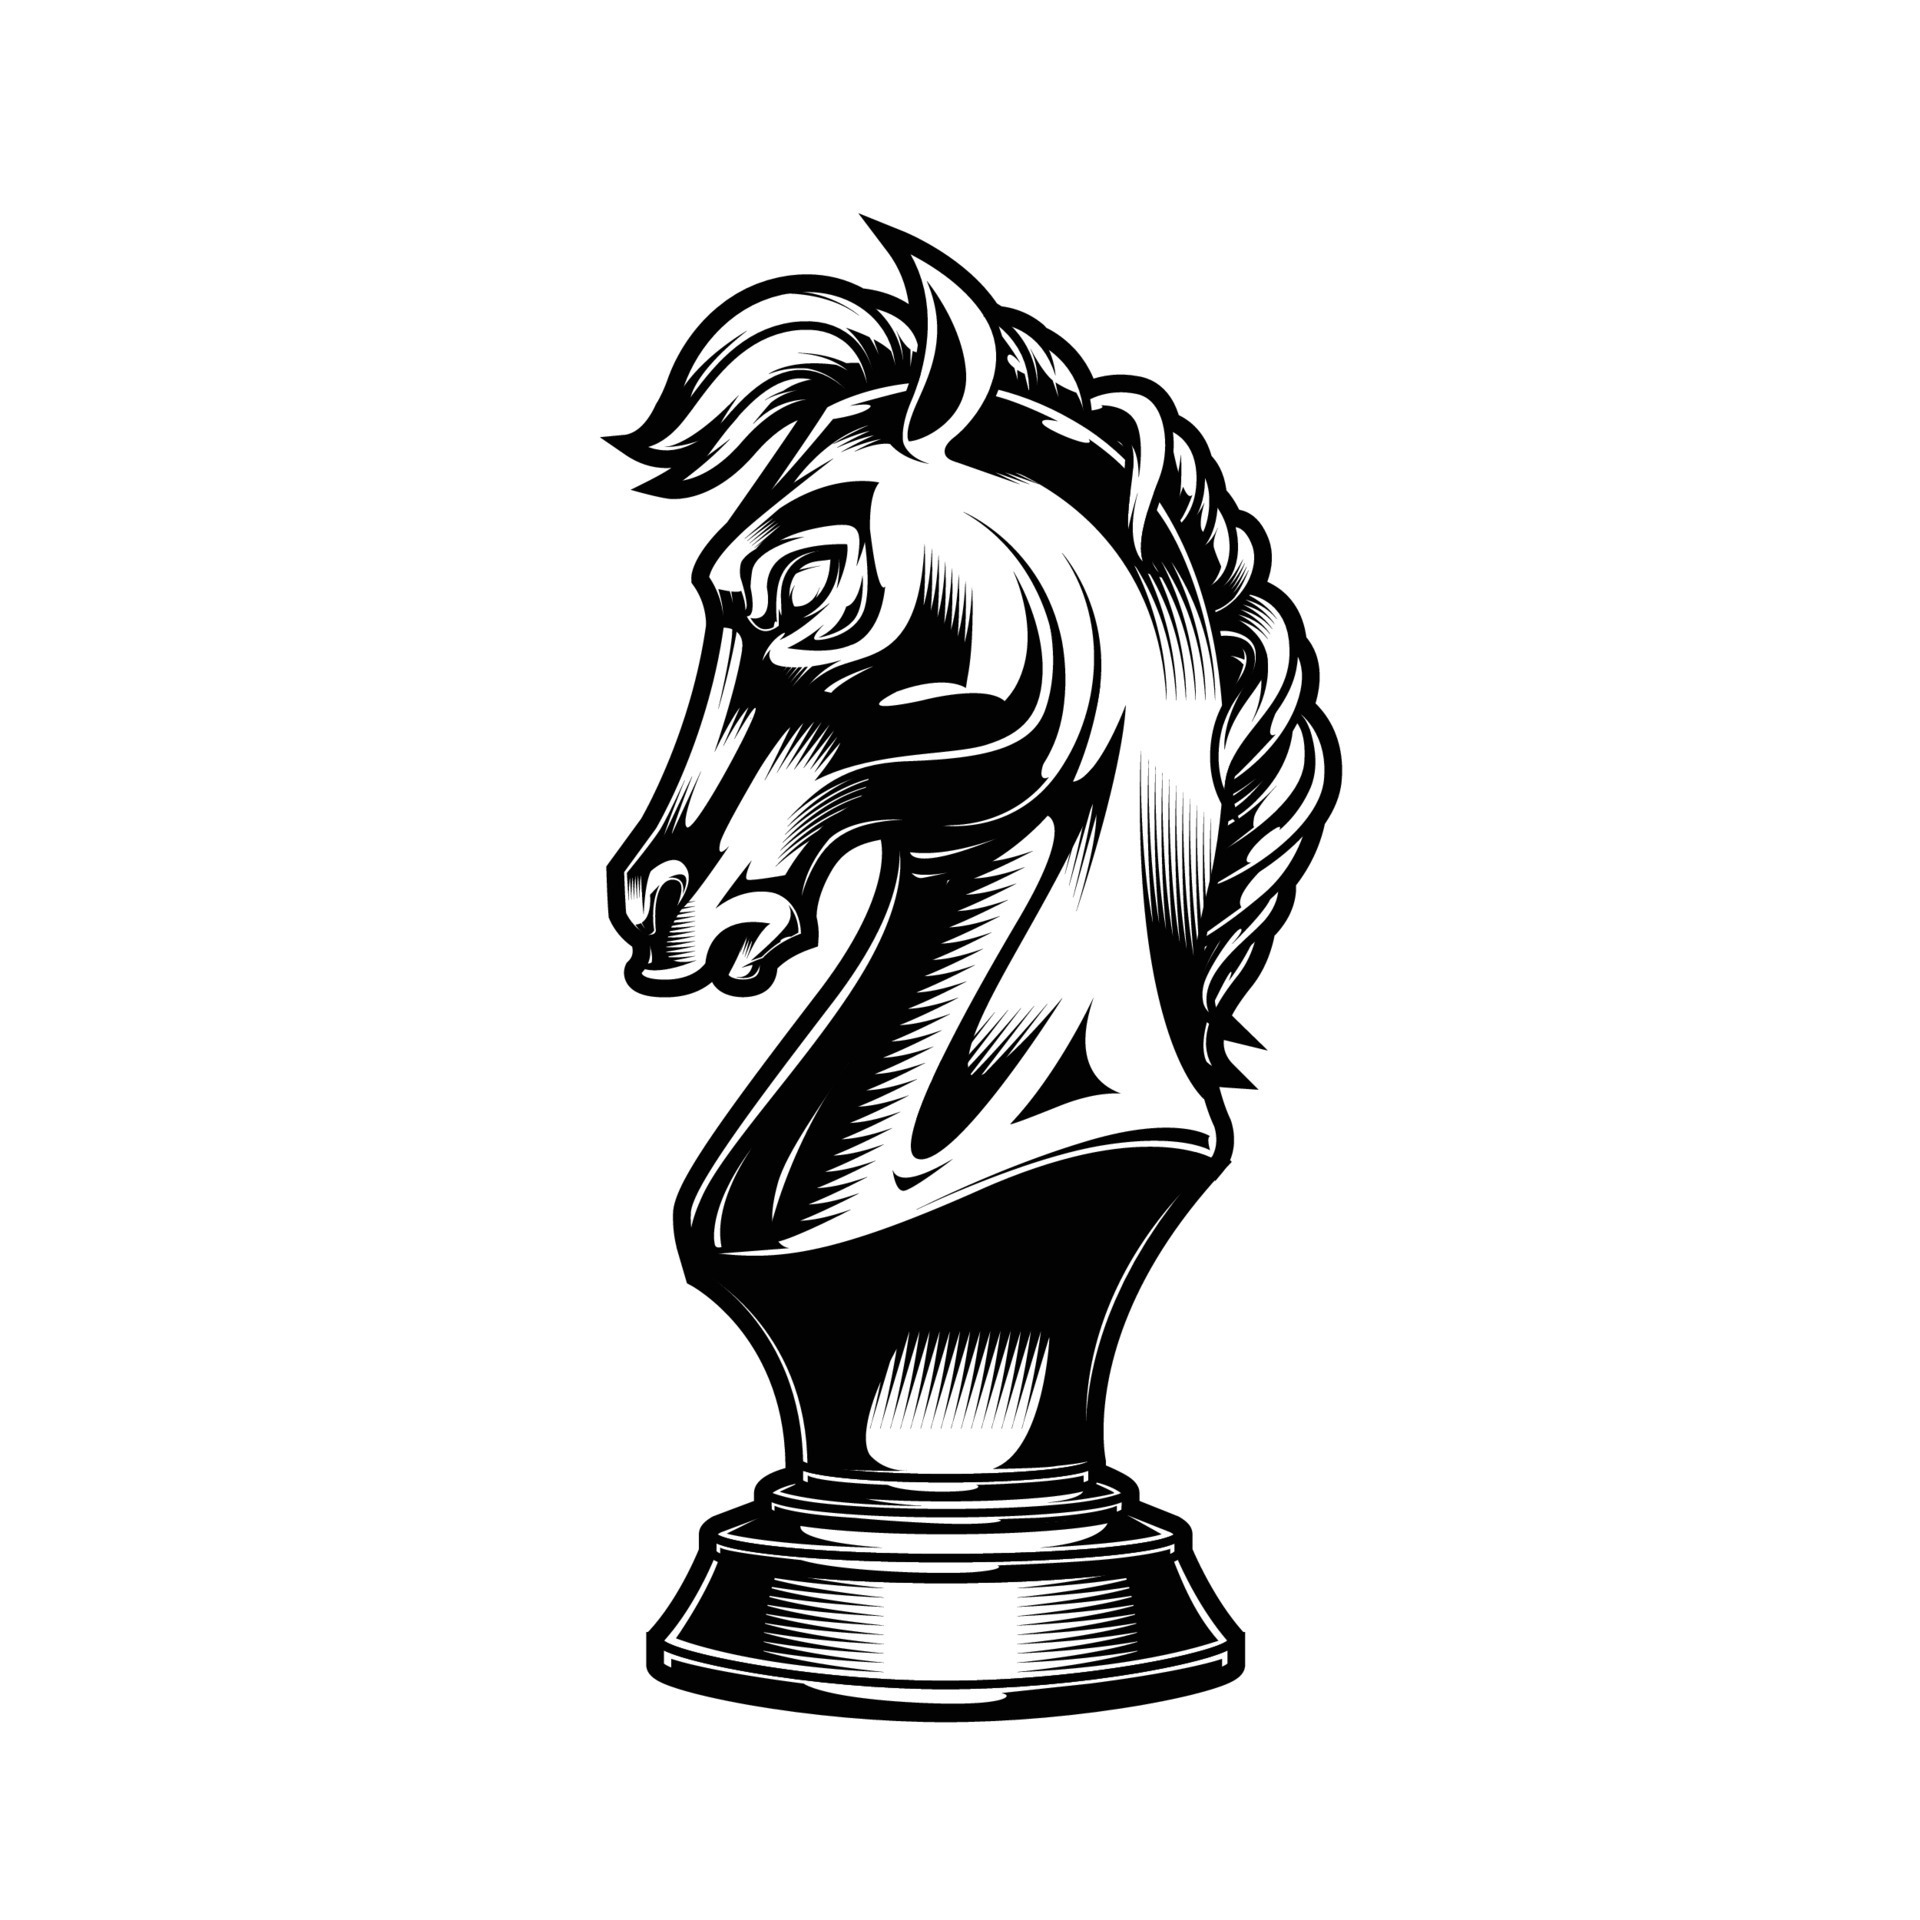 Cone Do Cavalo Preto Da Peça Do Xadrez Do Sinal. Royalty Free SVG,  Cliparts, Vetores, e Ilustrações Stock. Image 149445745